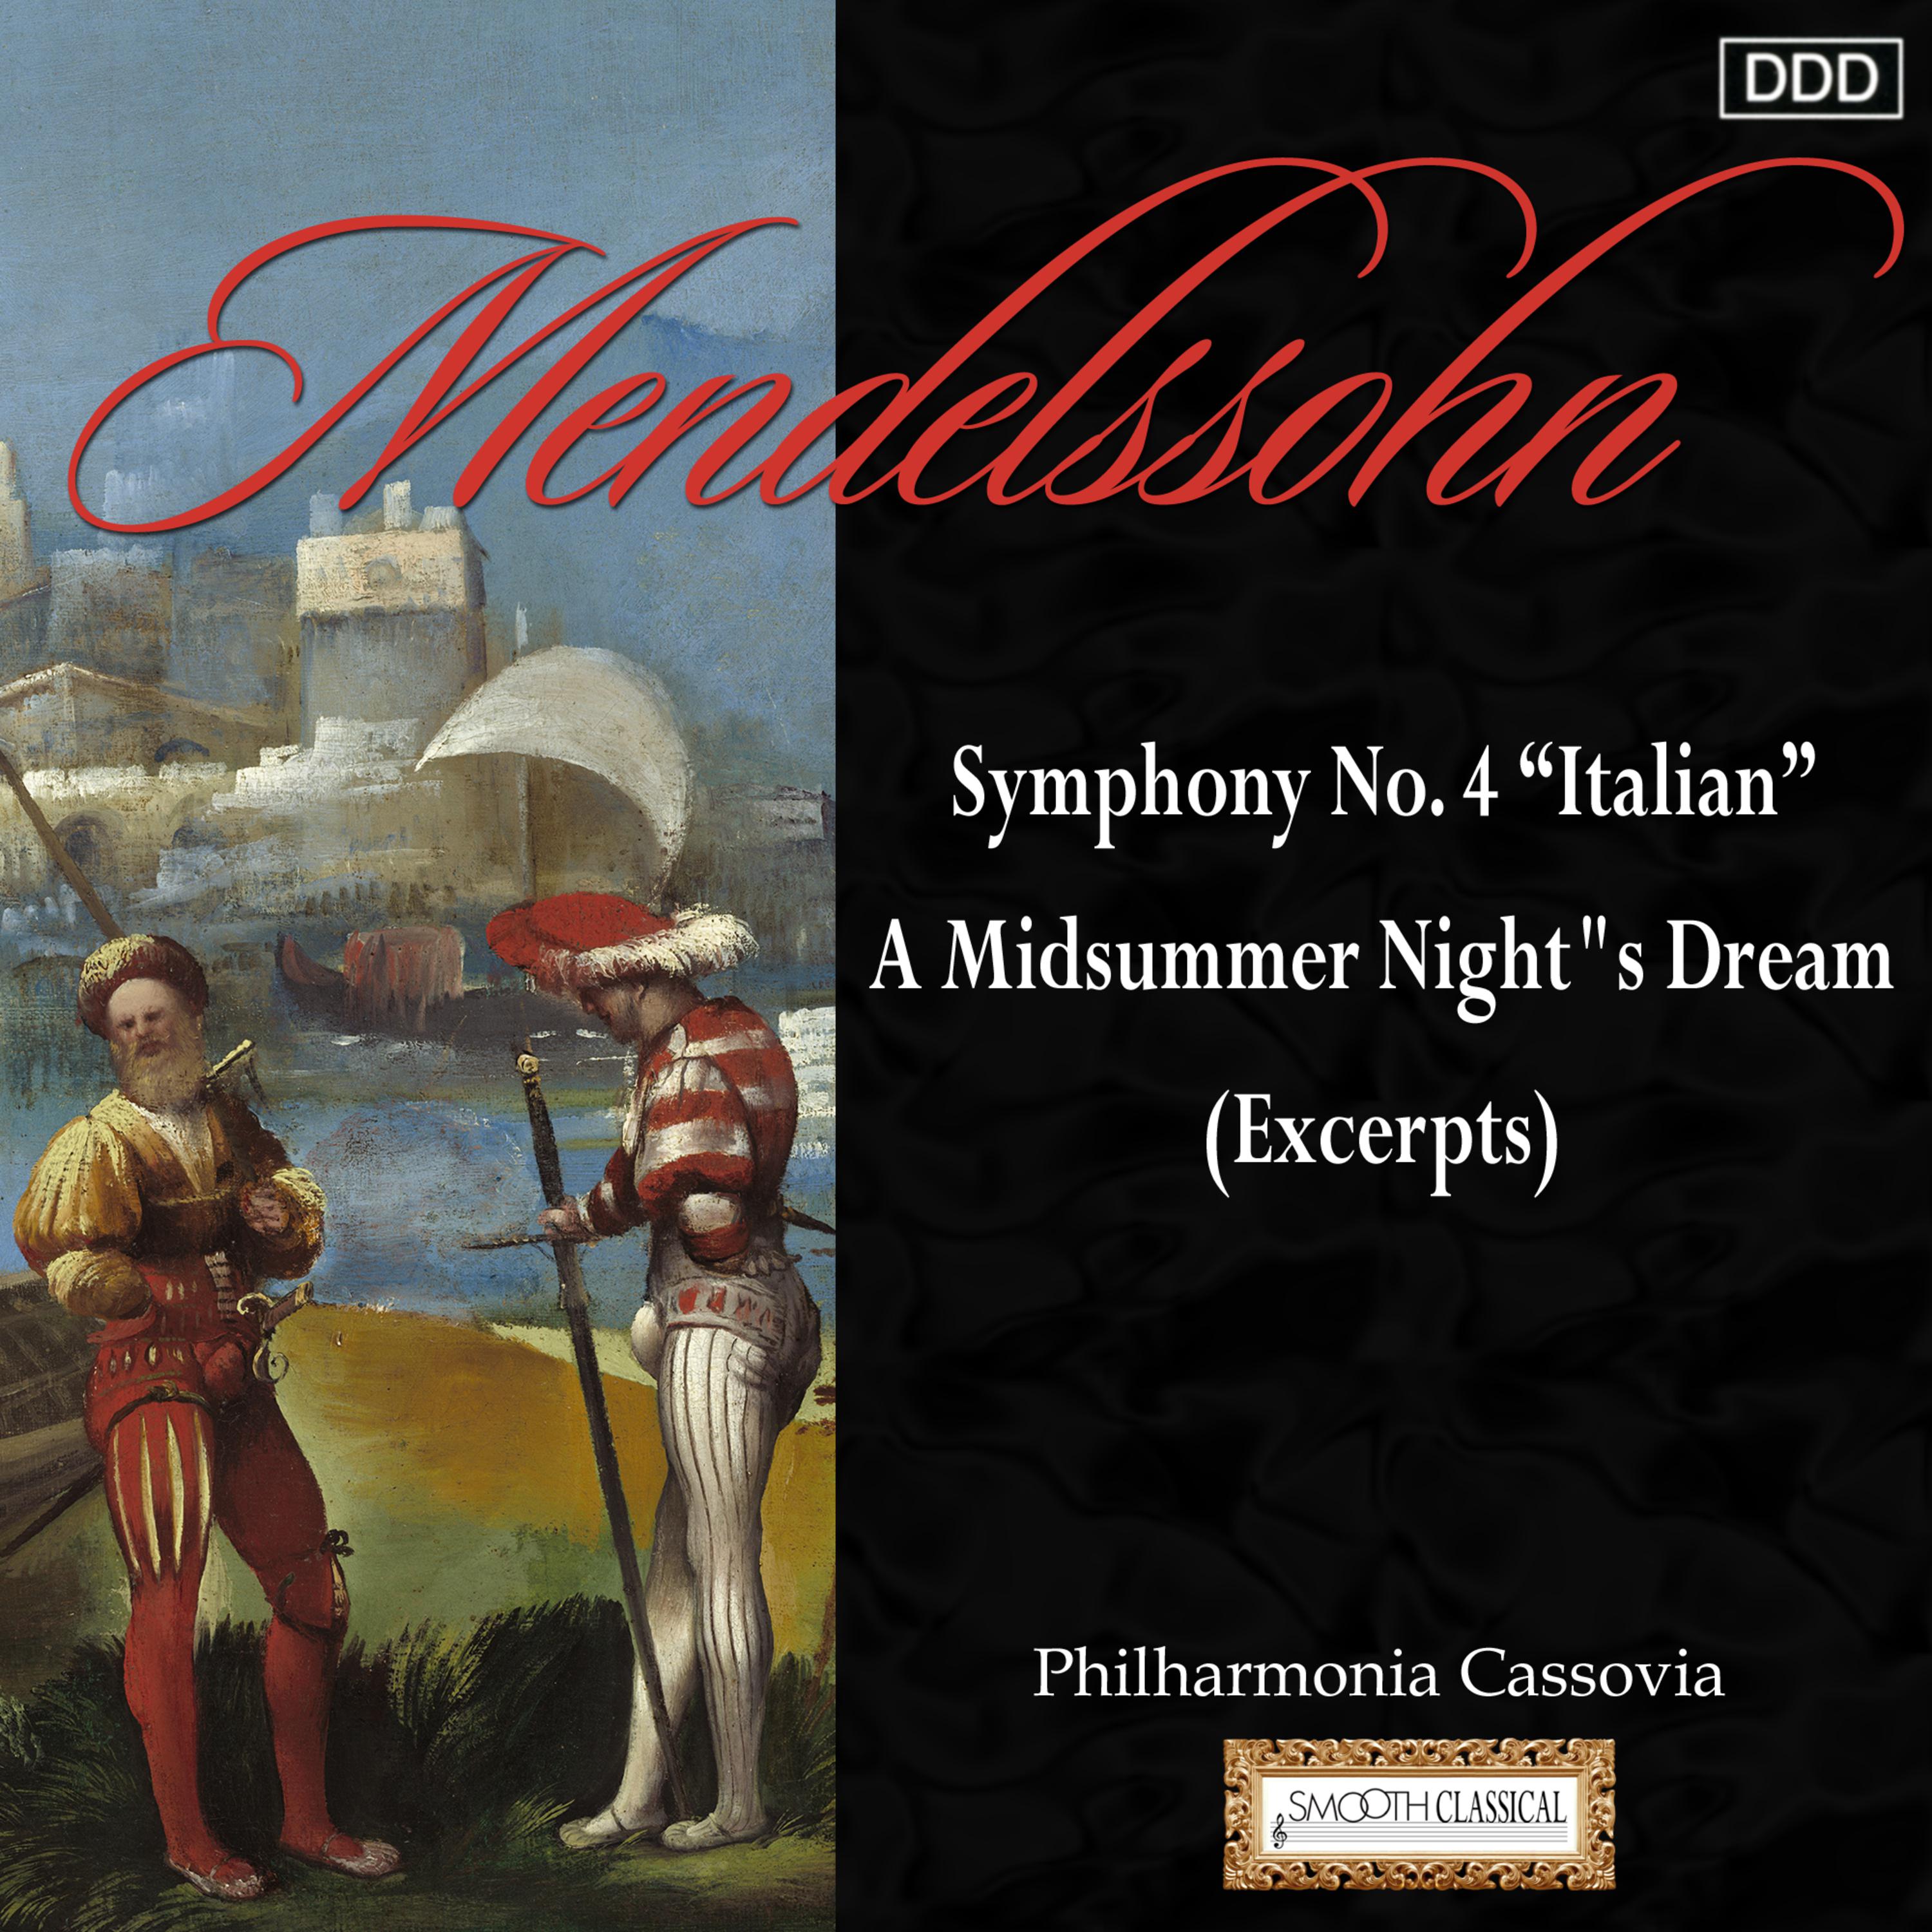 A Midsummer Night's Dream Overture, Op. 21, MWV P 3